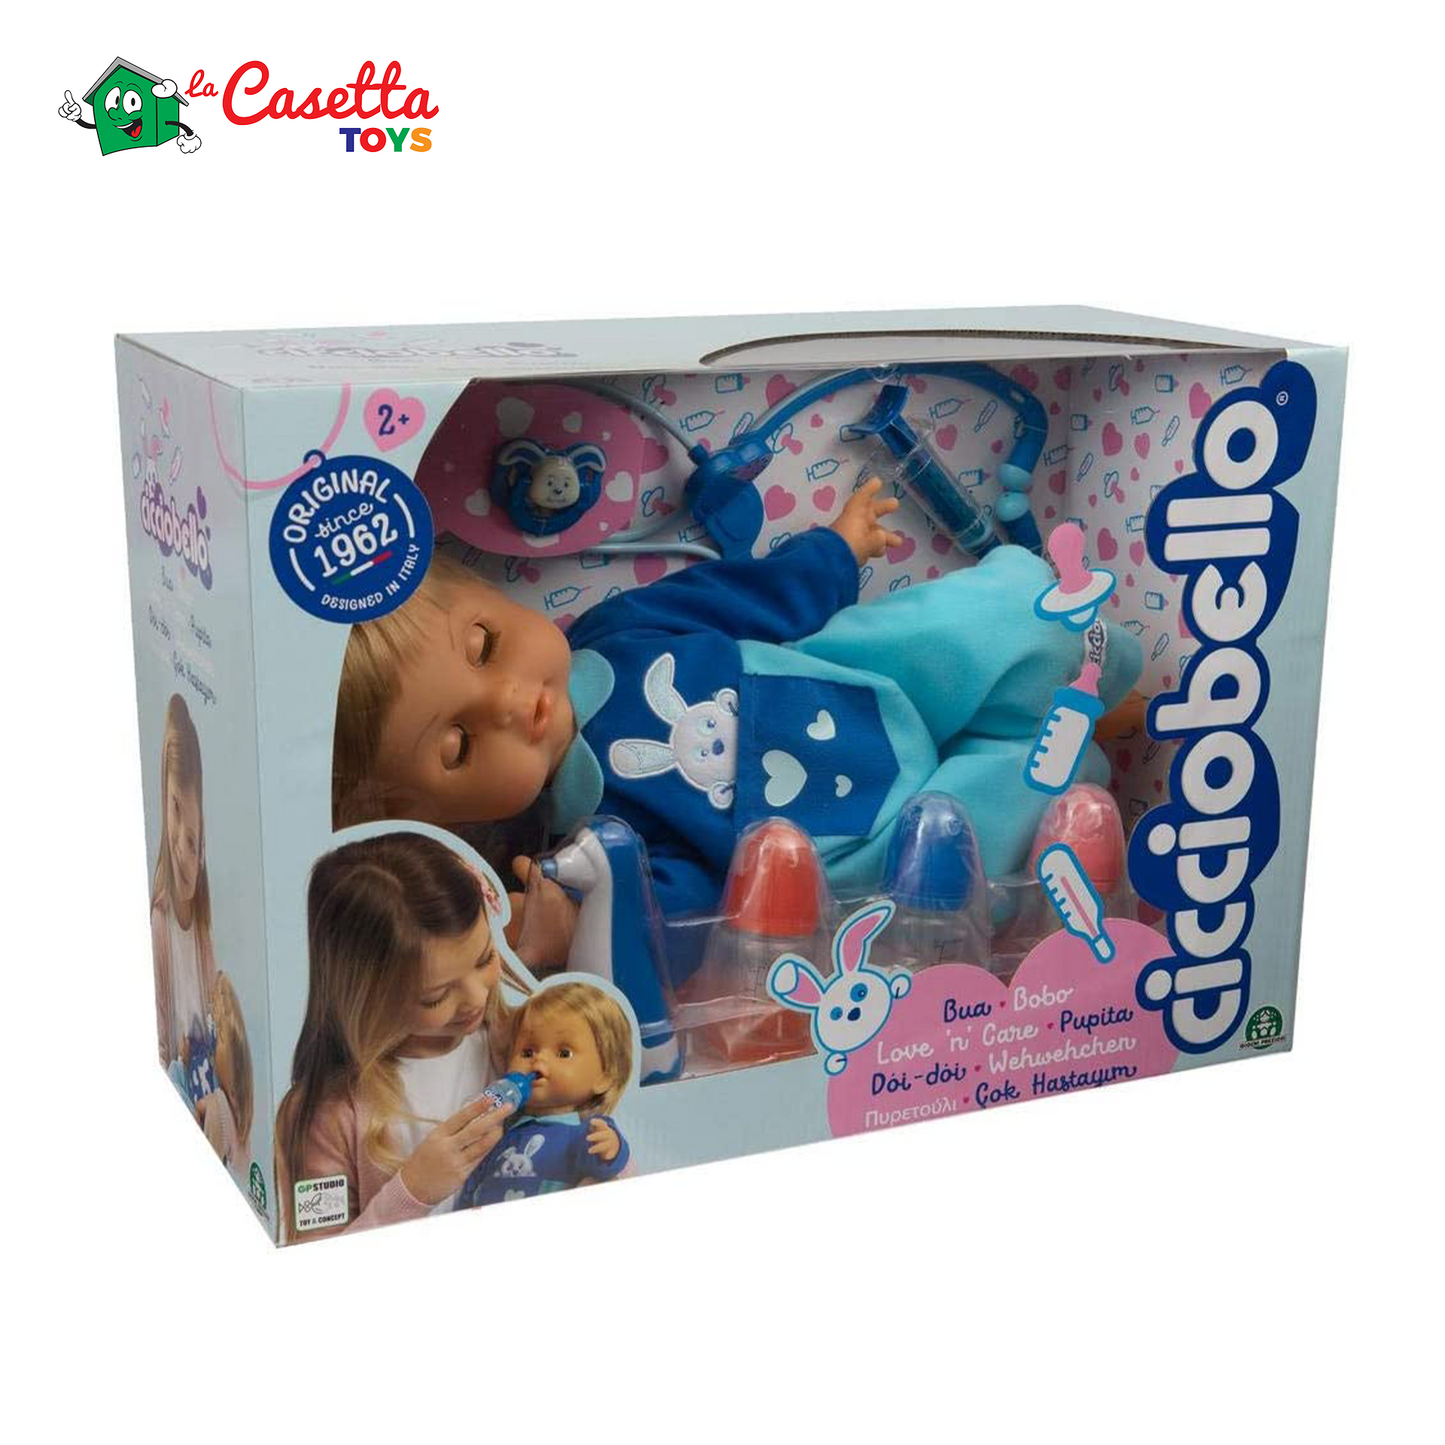 icciobello - Bua, la Bambola che Reagisce alle Cure della Bambina, con Accessori Interattivi e Infinite Combinazioni di Gioco, per Bambine a Partire dai 2 Anni, CCB69000